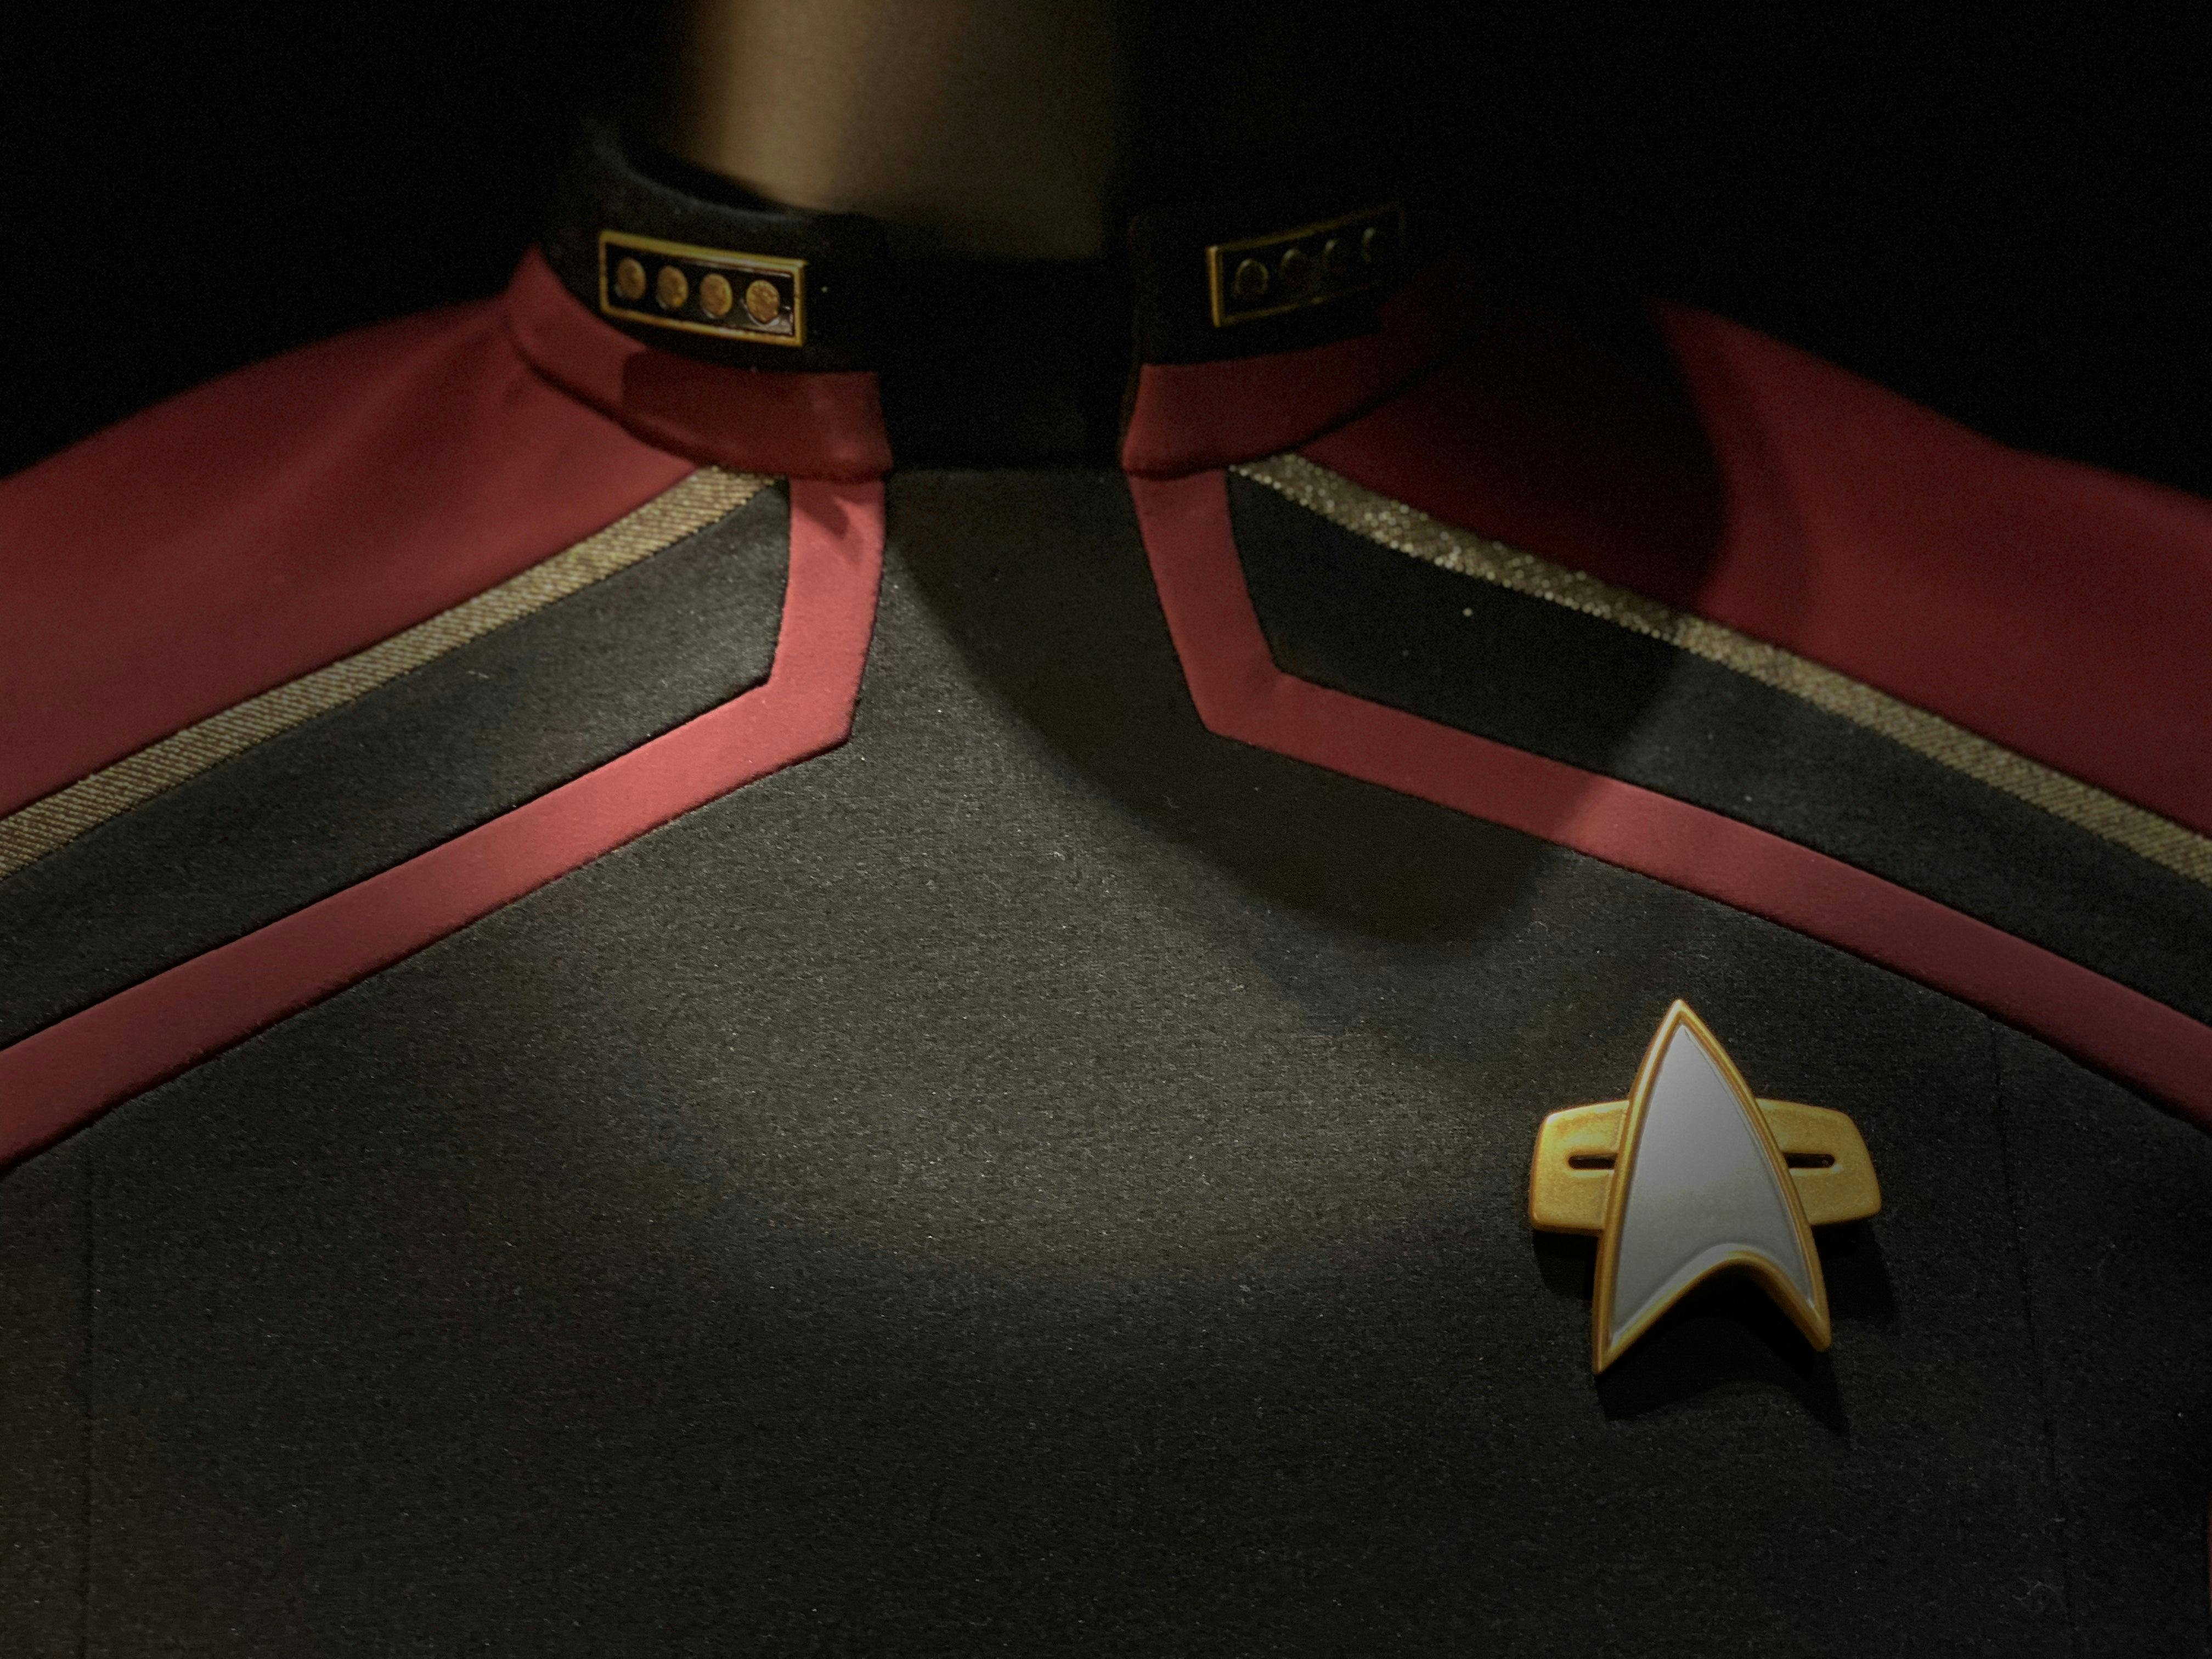 Star Trek: Picard, Admiral Picard uniform